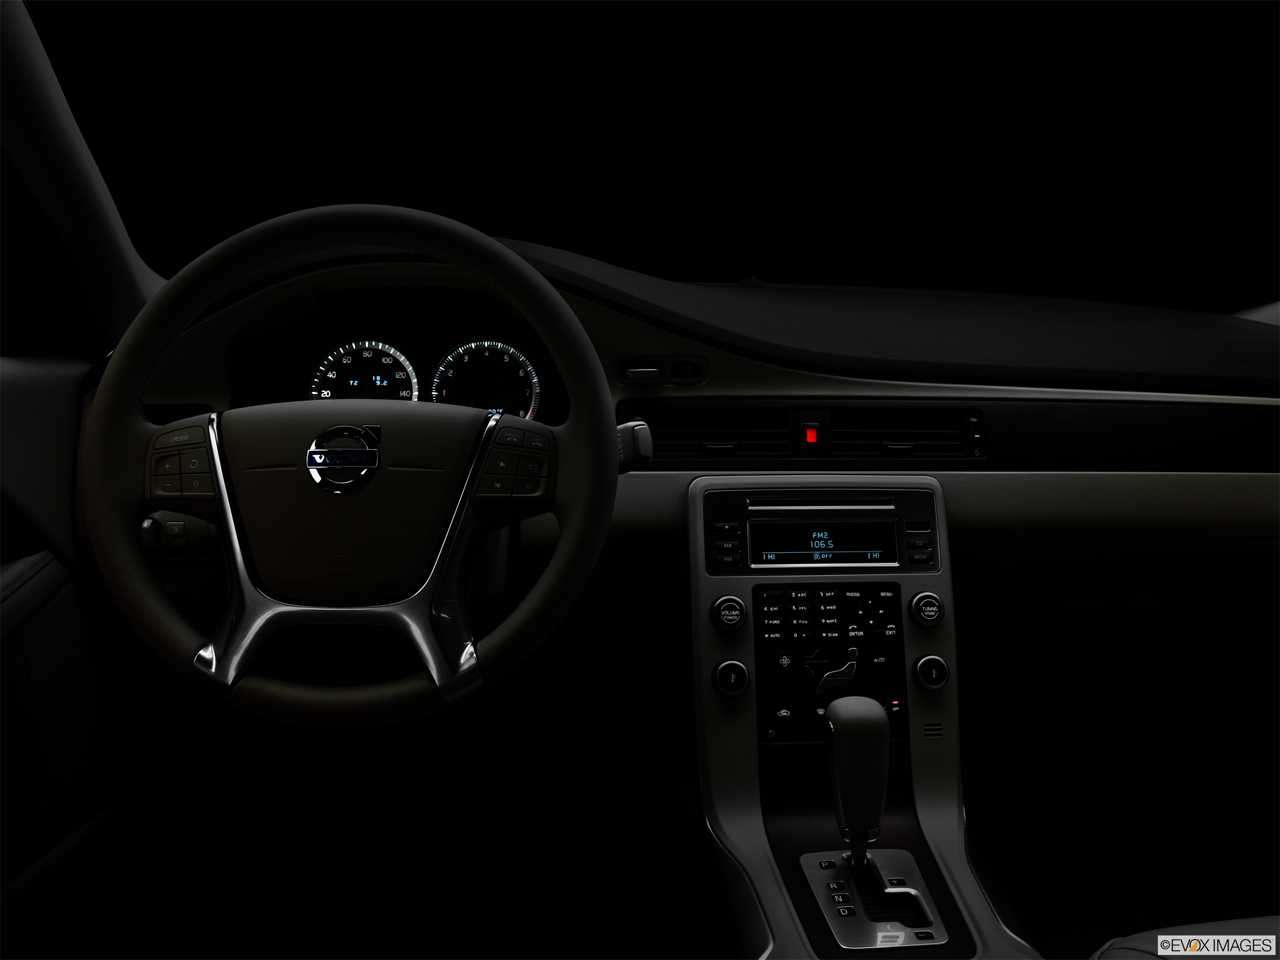 2011 Volvo S80 3.2 Centered wide dash shot - "night" shot. 